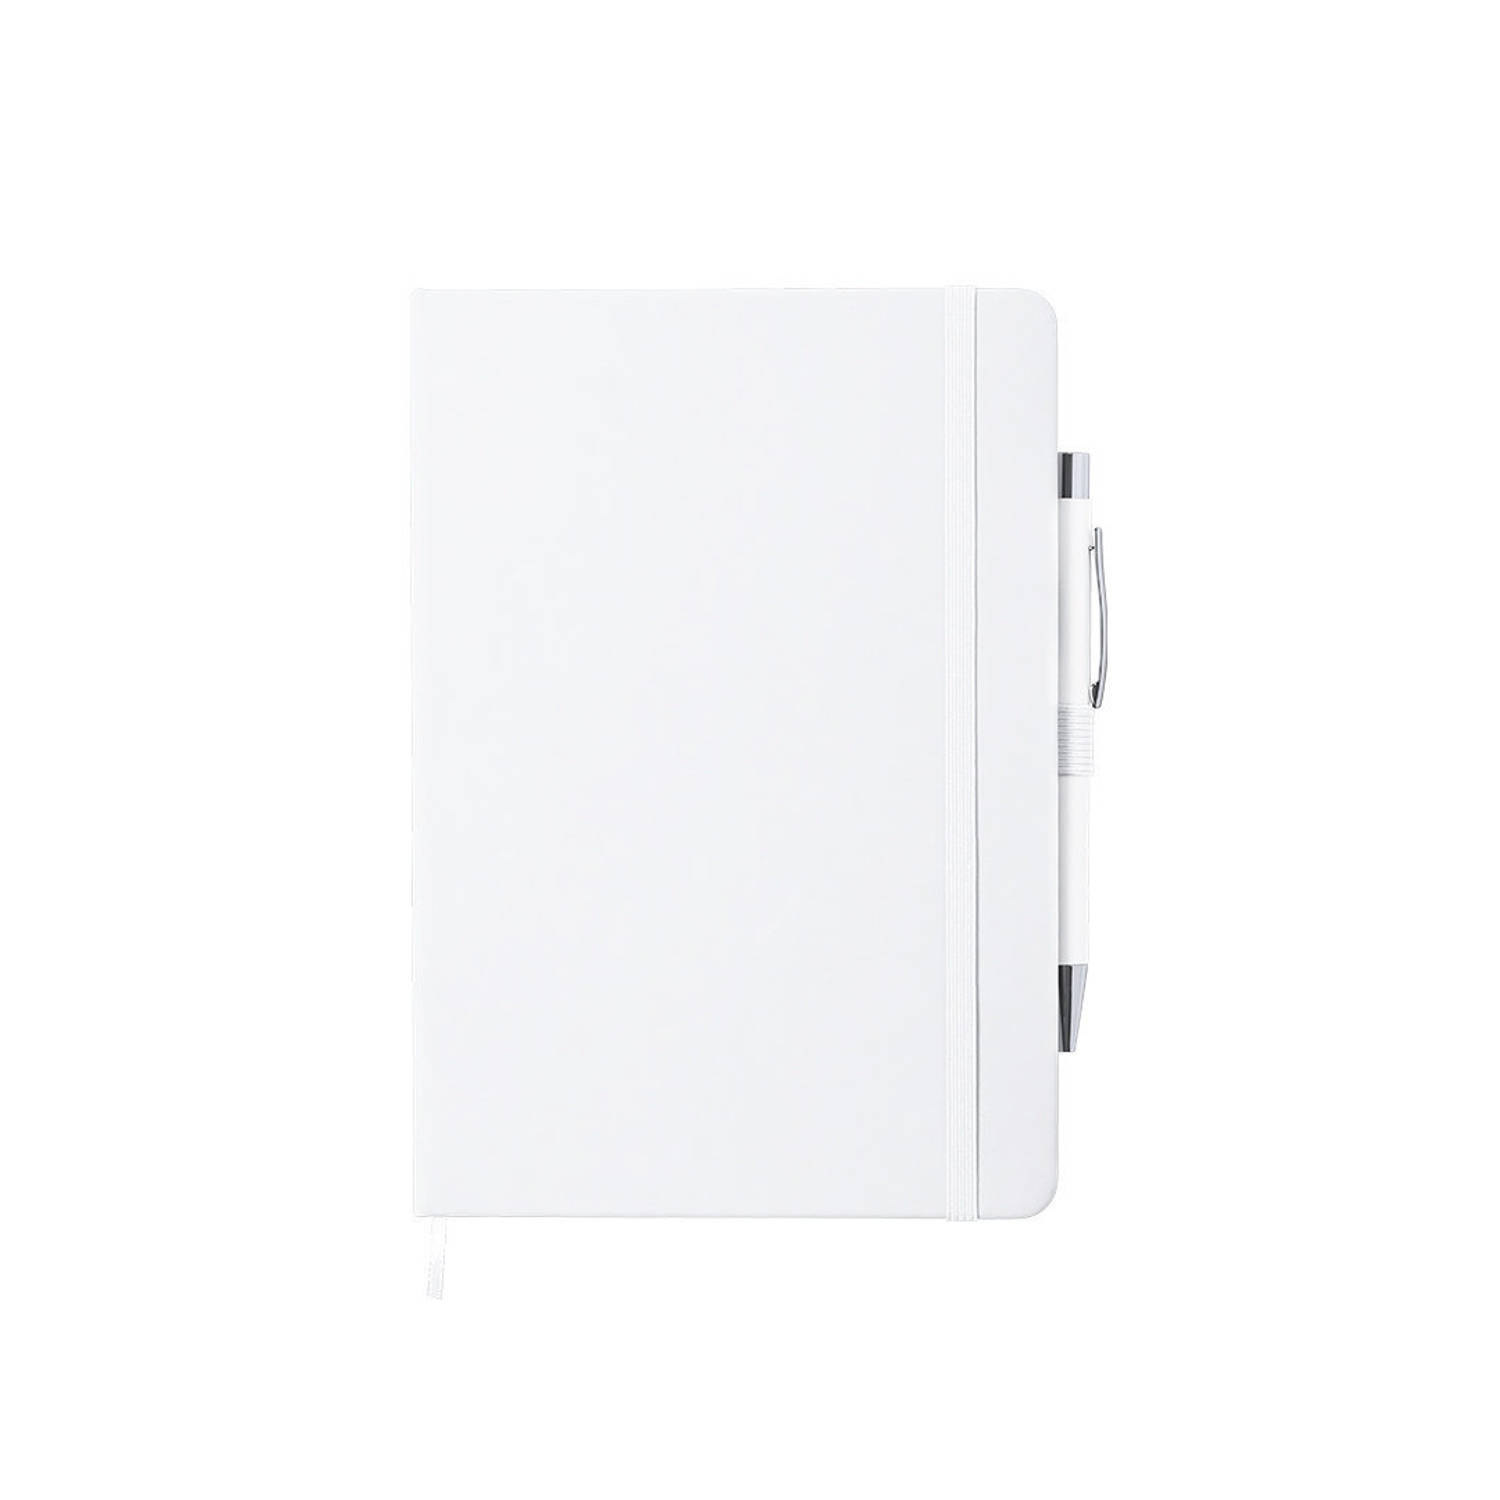 Luxe notitieboekje gelinieerd wit met elastiek en pen A5 formaat - Notitieboek